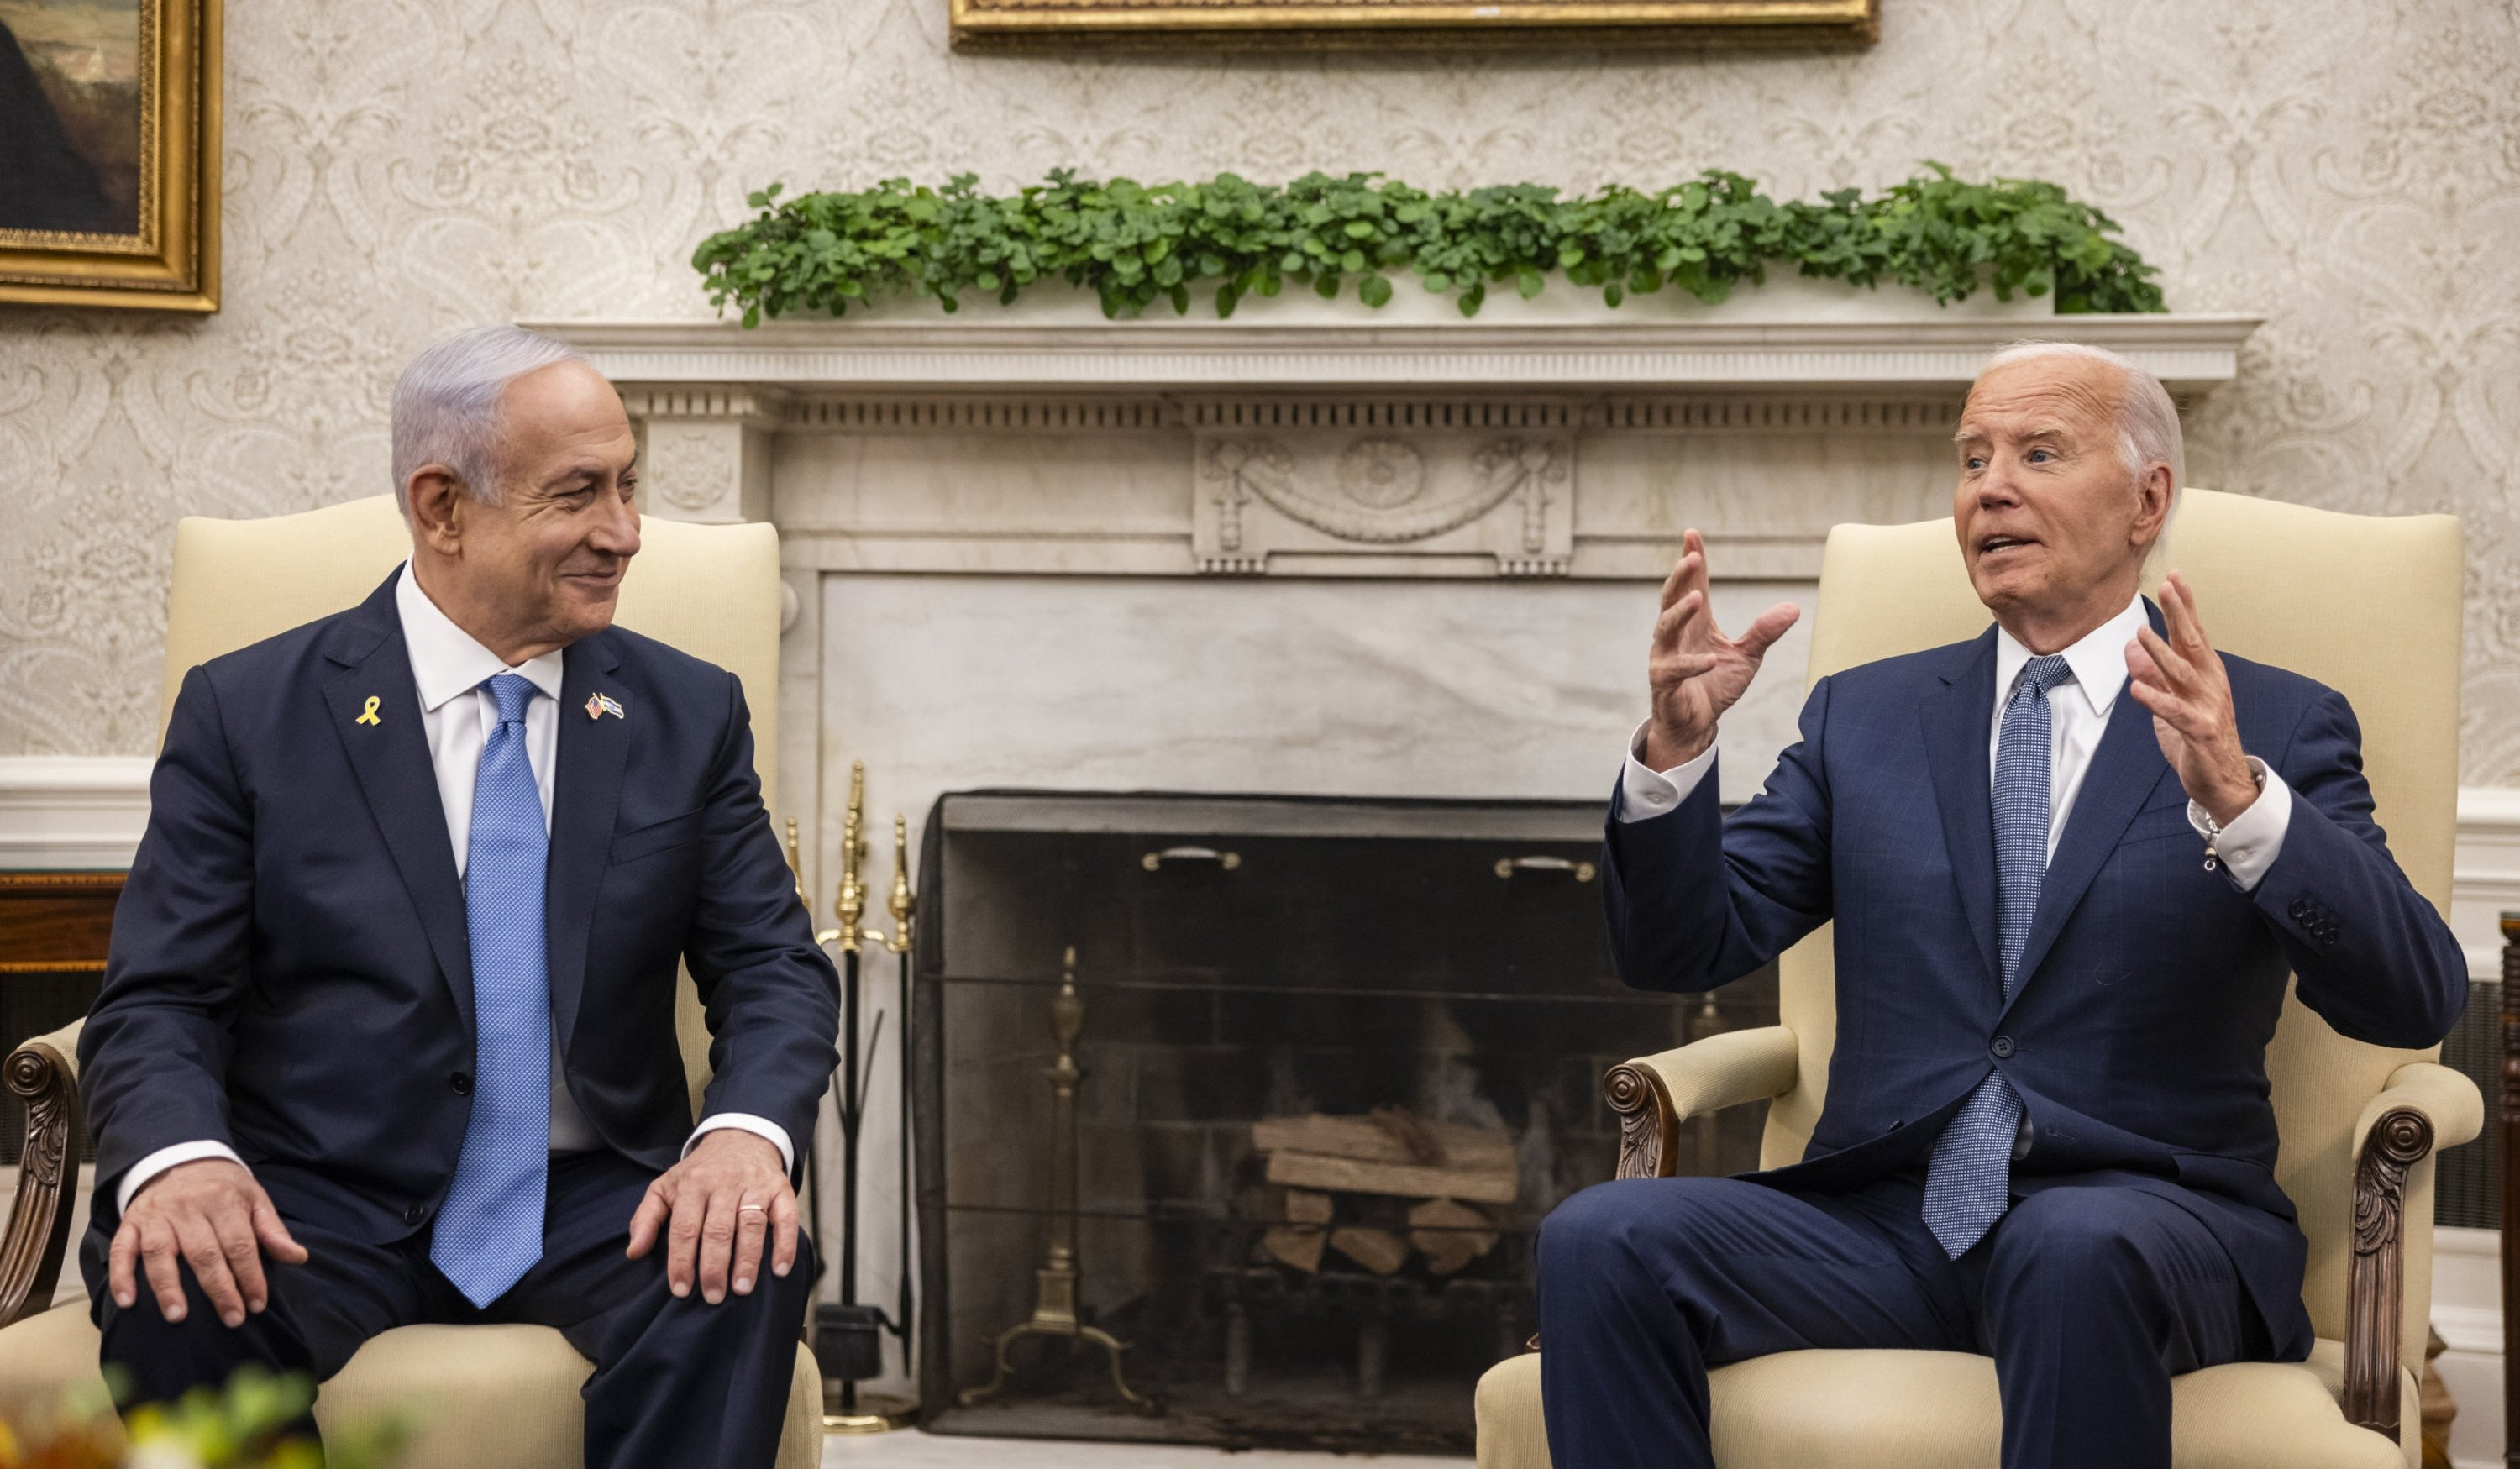 Байден и Нетаньяху обсудили вопросы установления режима прекращения огня в секторе Газа